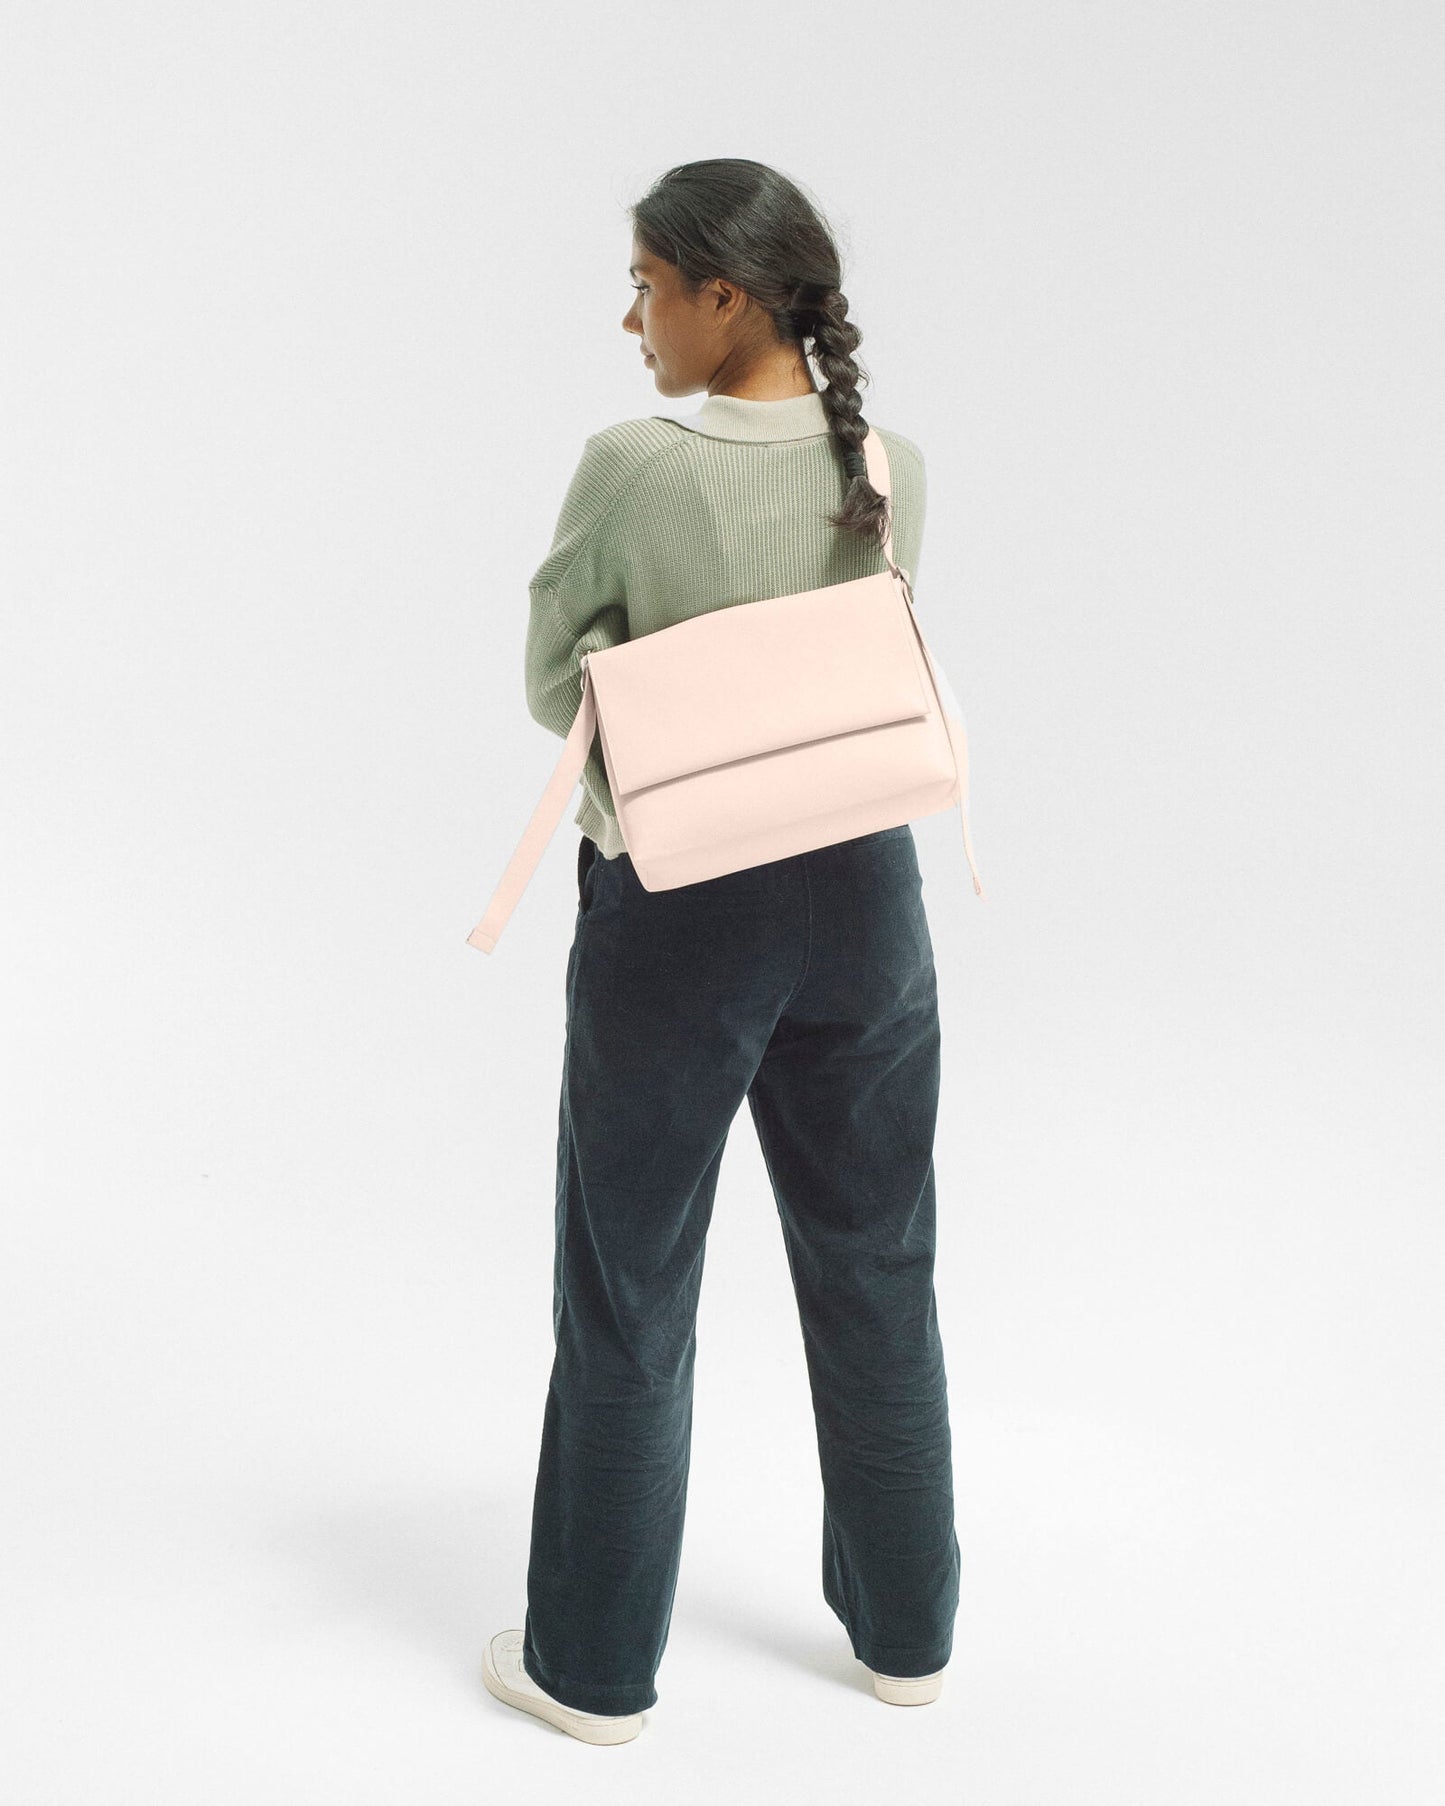 Messenger bag pale pink